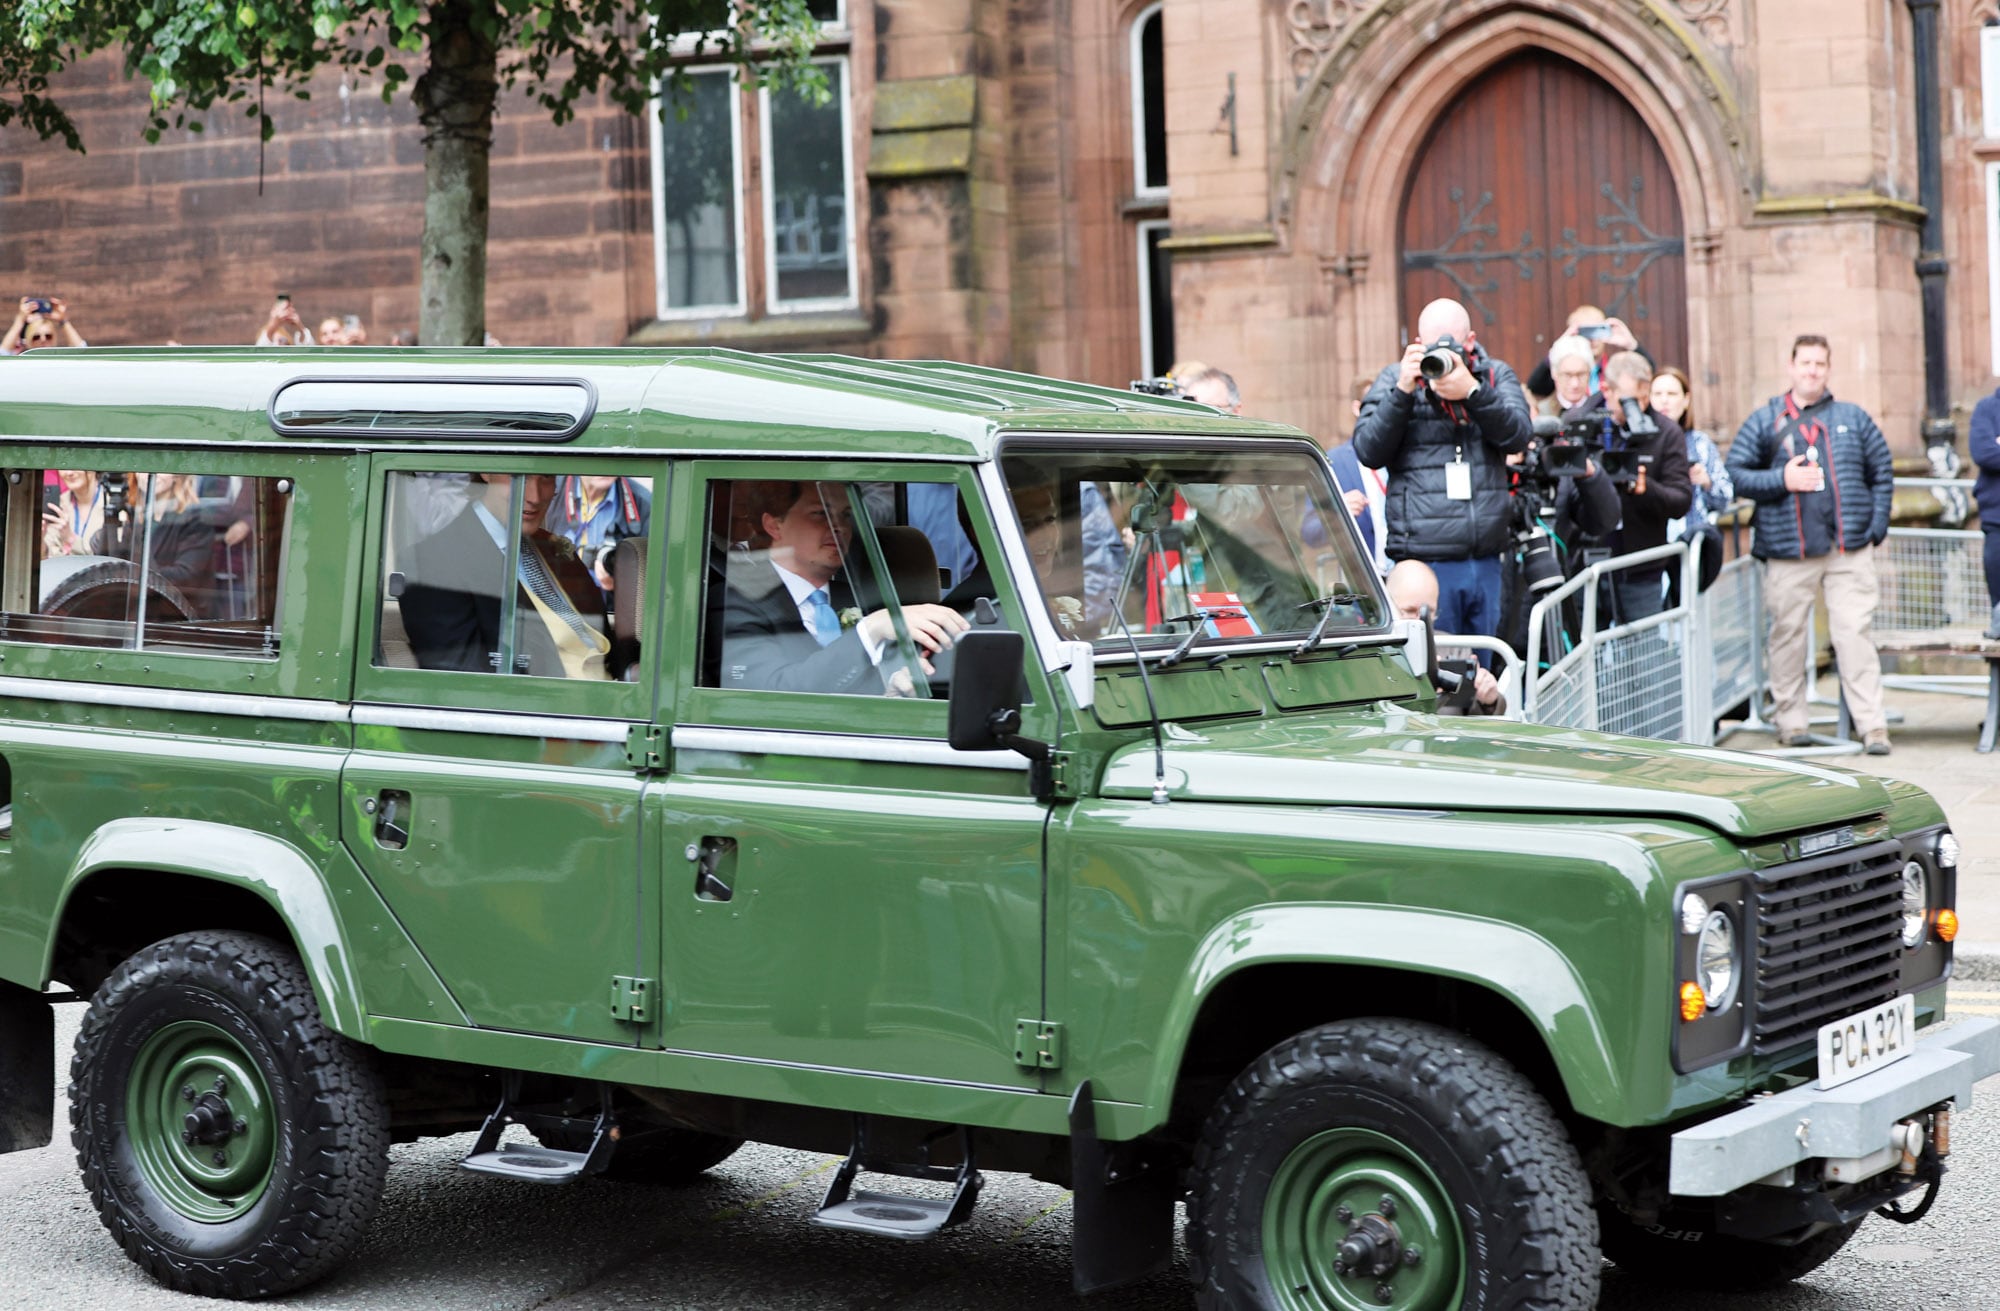 Hugh llegó a bordo de un Land-Rover Defender verde y fue recibido con aplausos del público. 